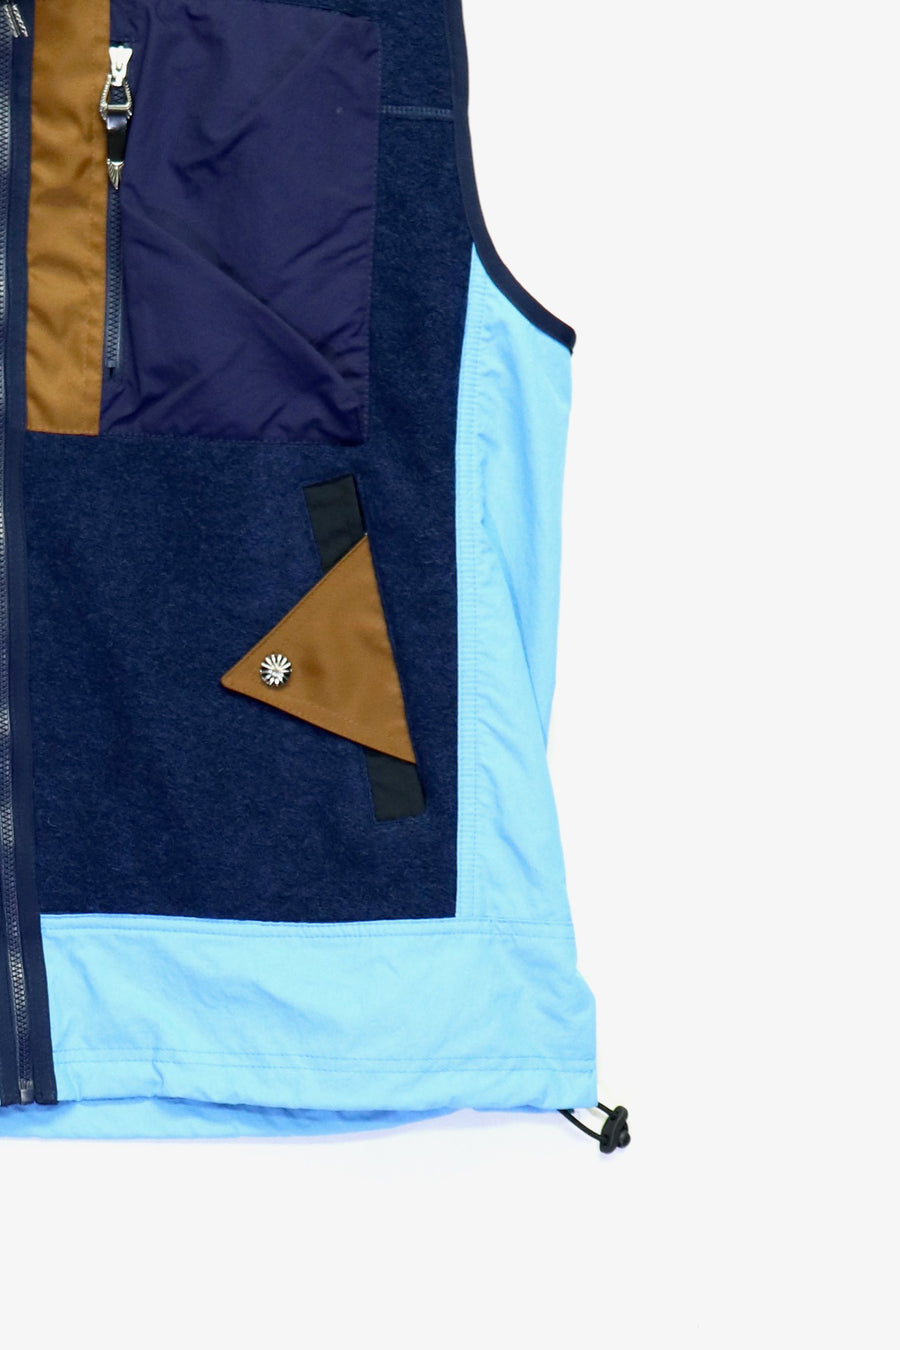 TOGA ViriLIS Wool Jersey Vest mail order ｜ Palette Art Alive